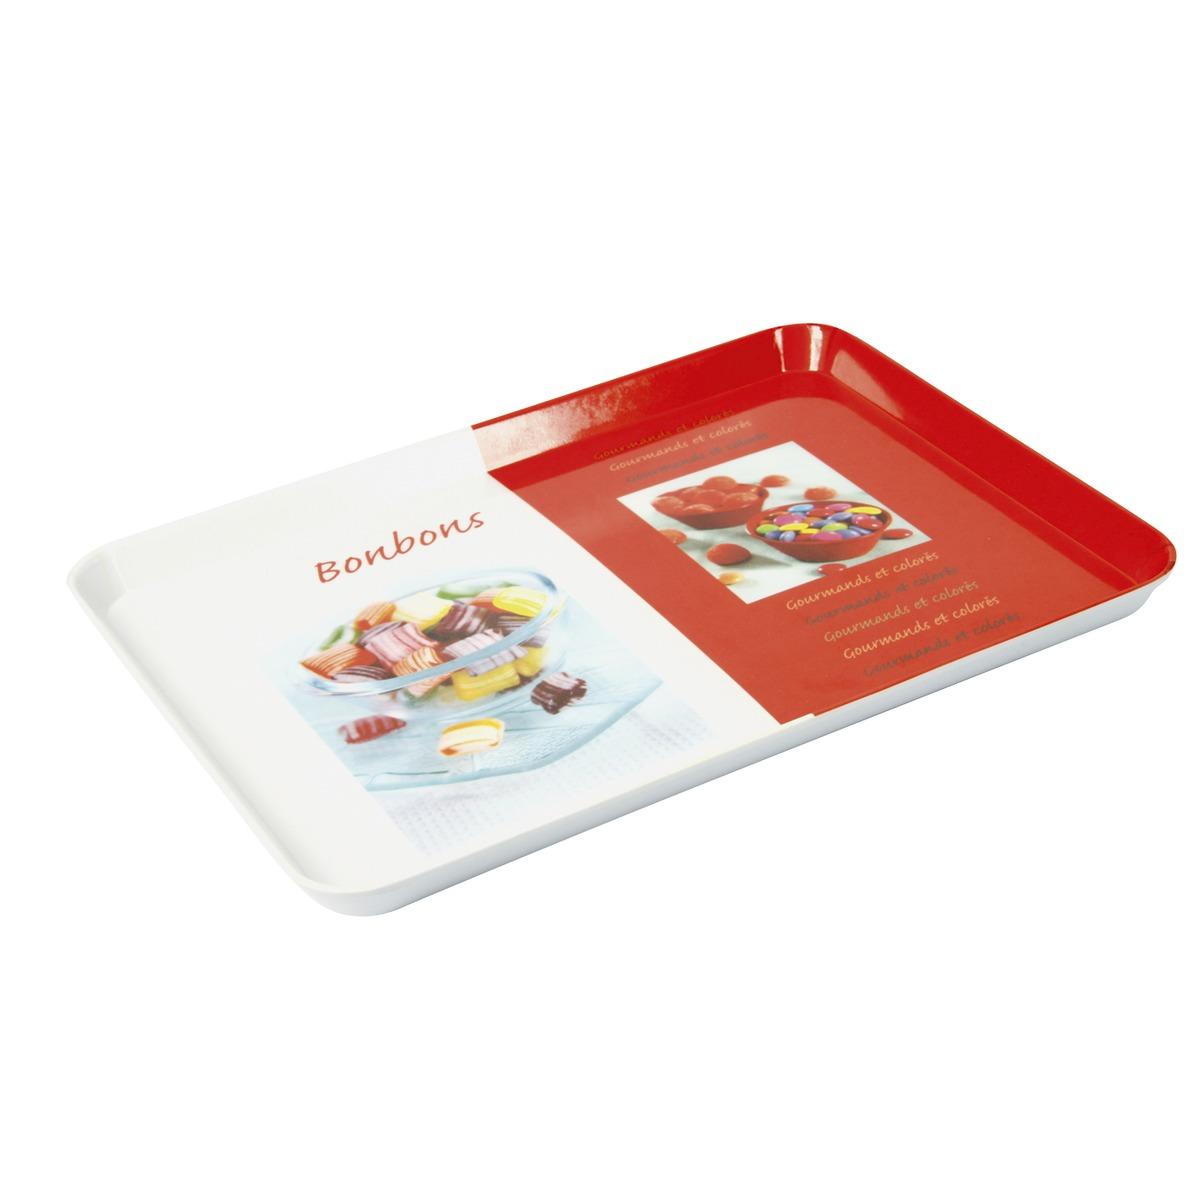 Plateau de présentation en mélamine - 30 x 22 cm - Thème bonbons - Rouge, blanc